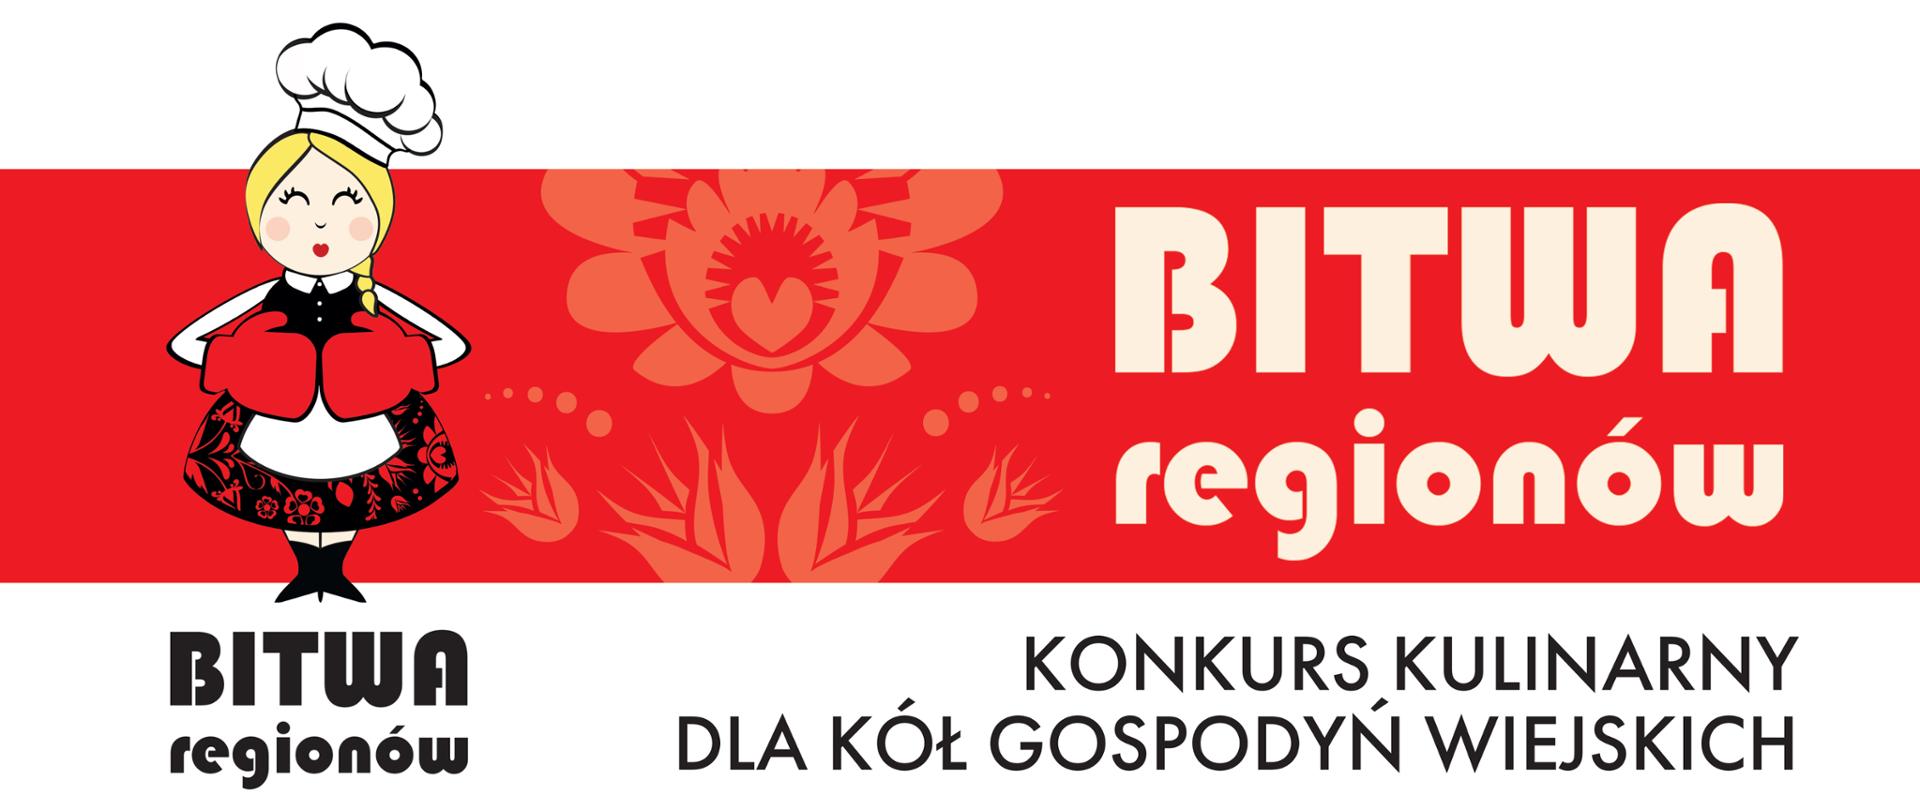 plakat z napisem Bitwa Regionów konkurs kulinarny dla gospodyń wiejskich